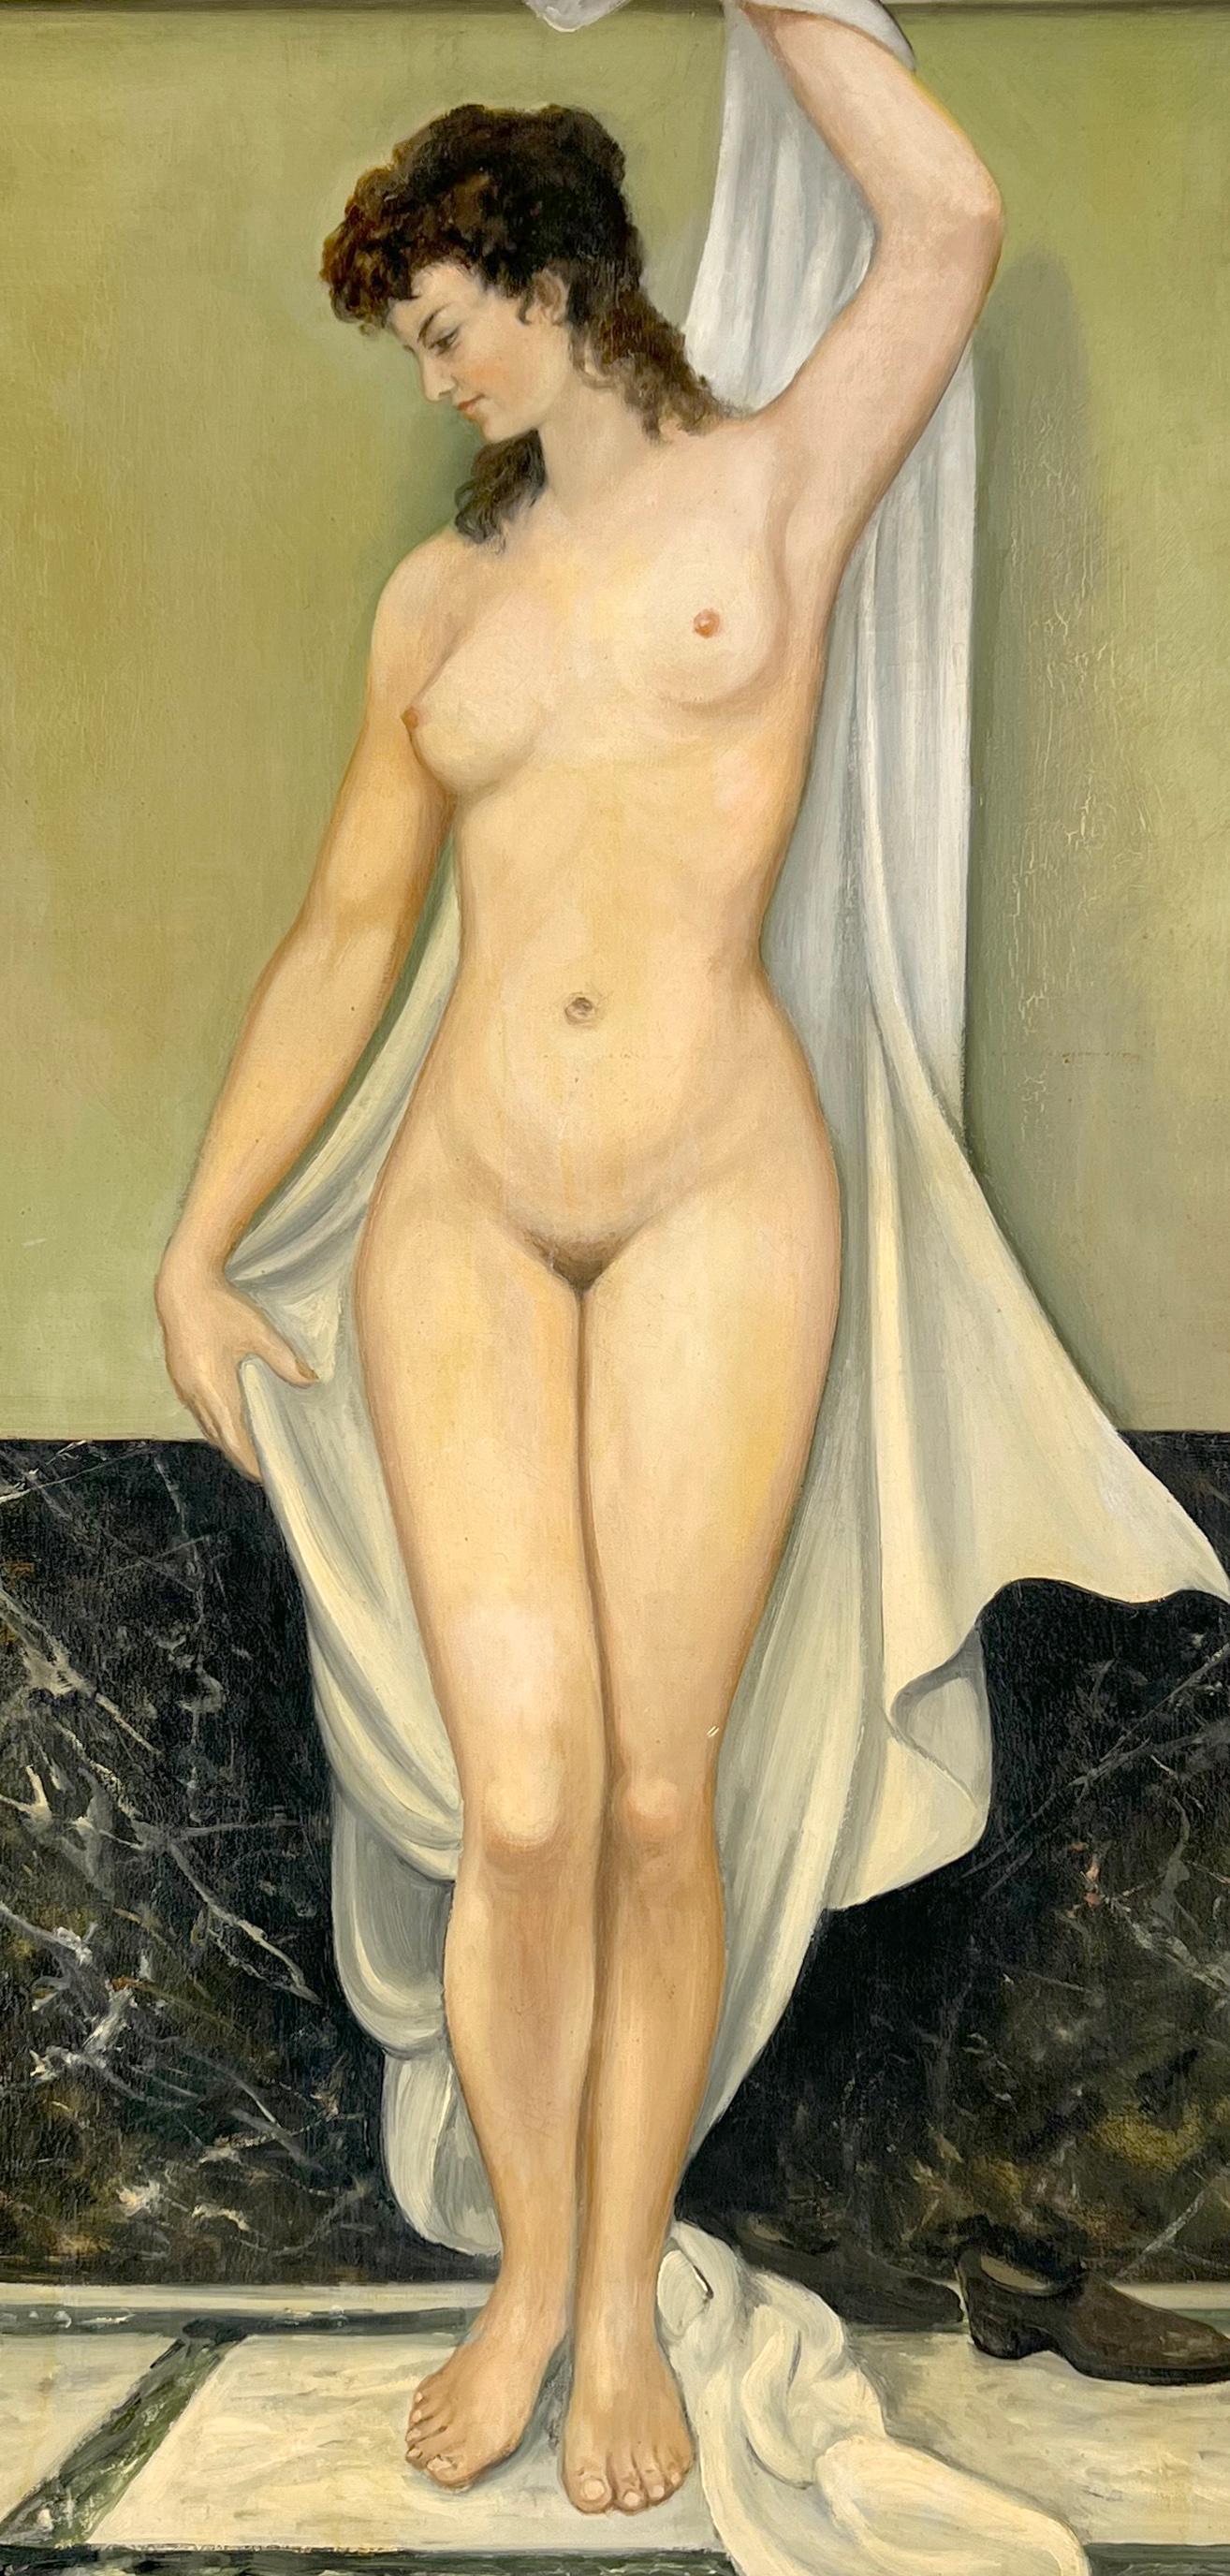 Akt in den römischen Baths, Öl auf Leinen, 1967 – Painting von M Bondi